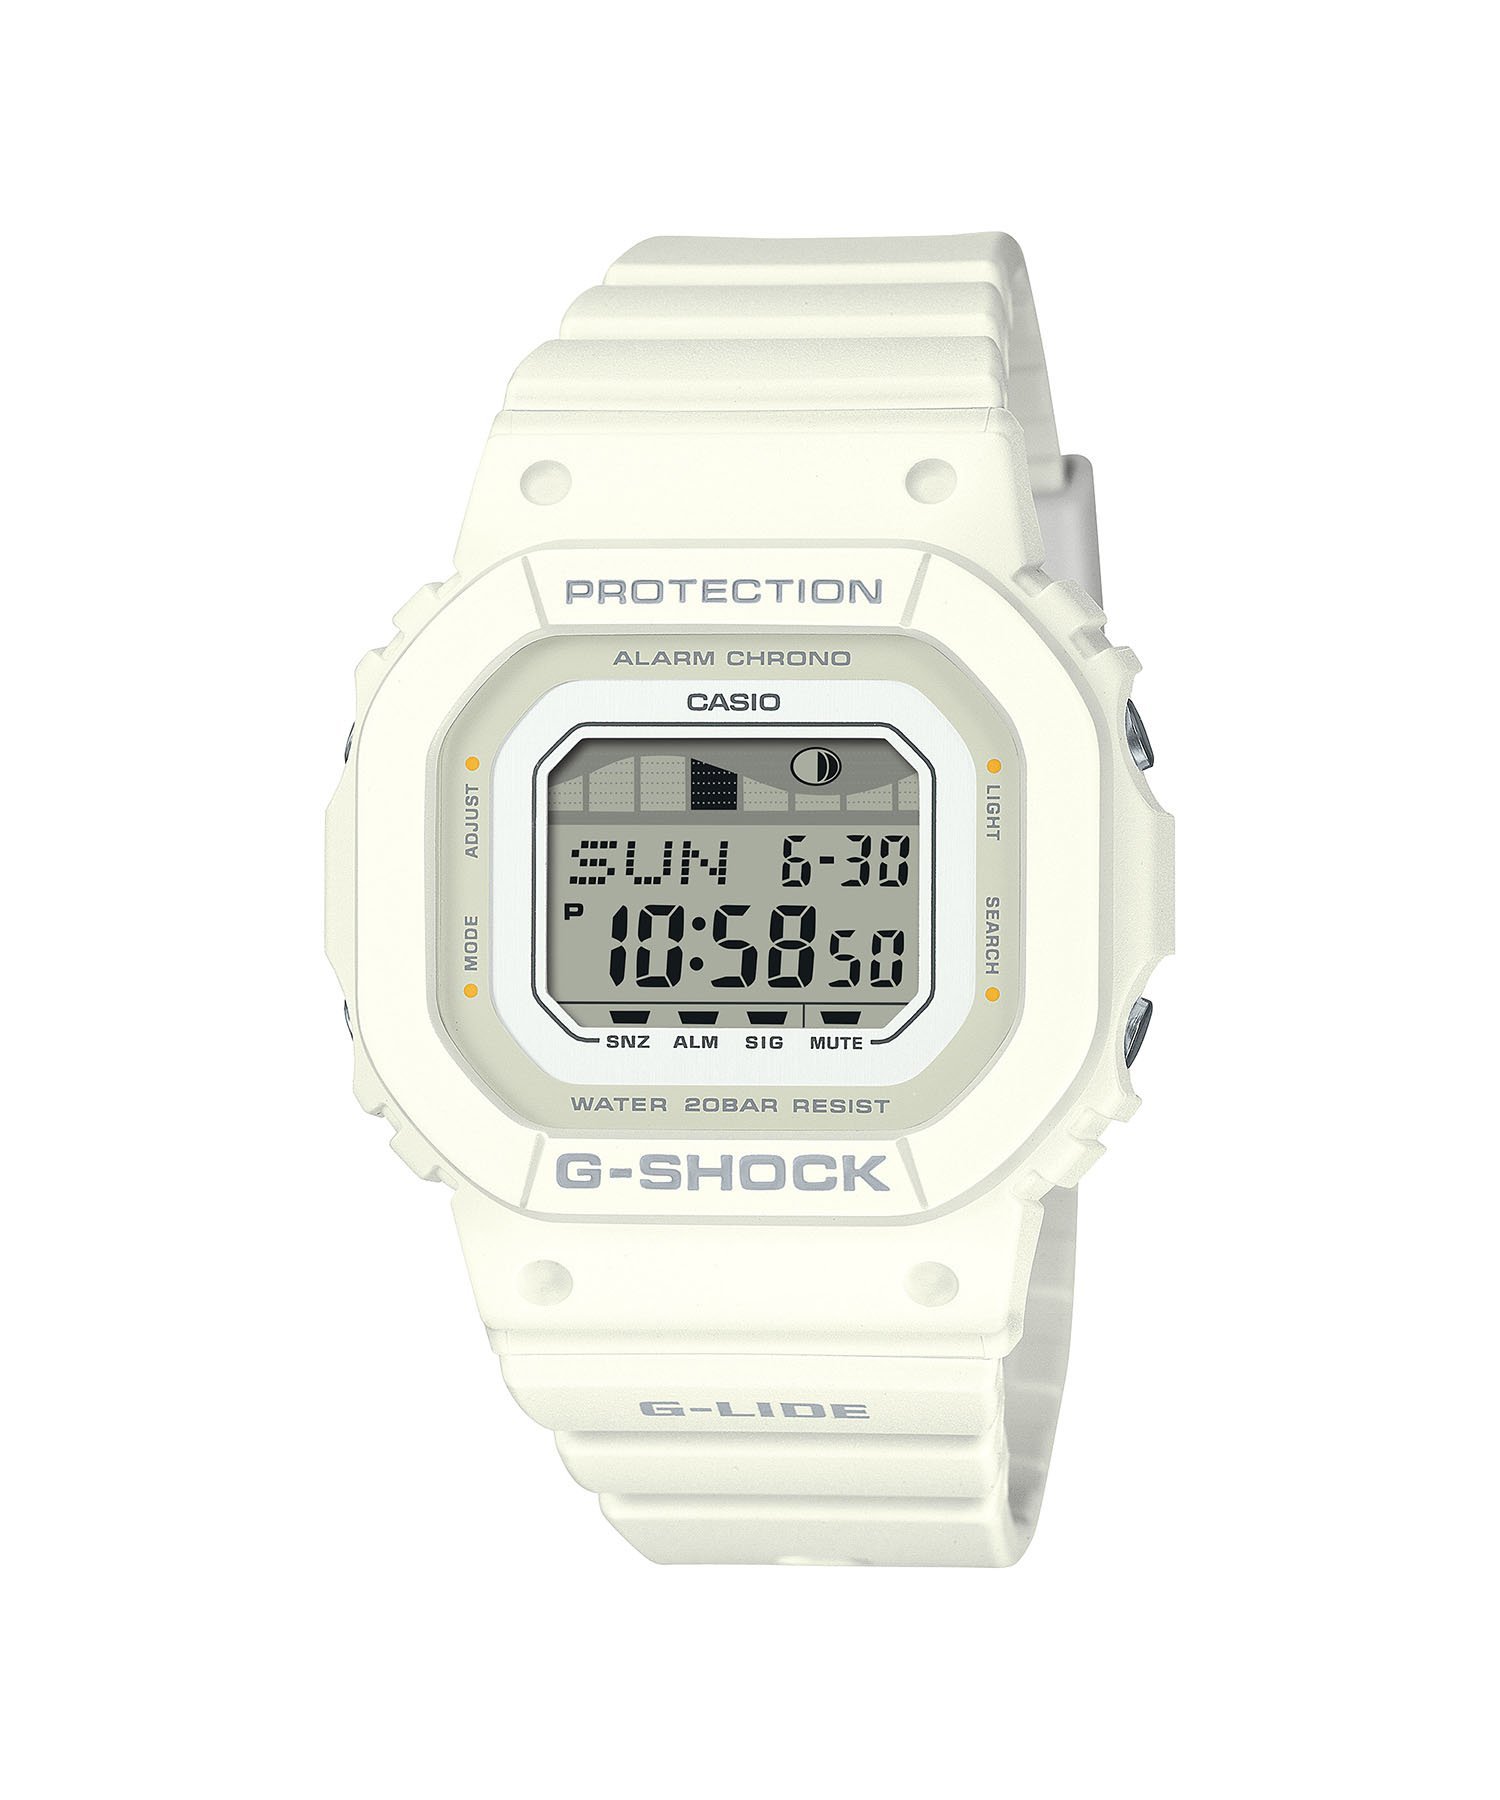 楽天Rakuten FashionG-SHOCK G-SHOCK/GLX-S5600-7BJF/カシオ ブリッジ アクセサリー・腕時計 腕時計 ホワイト【送料無料】